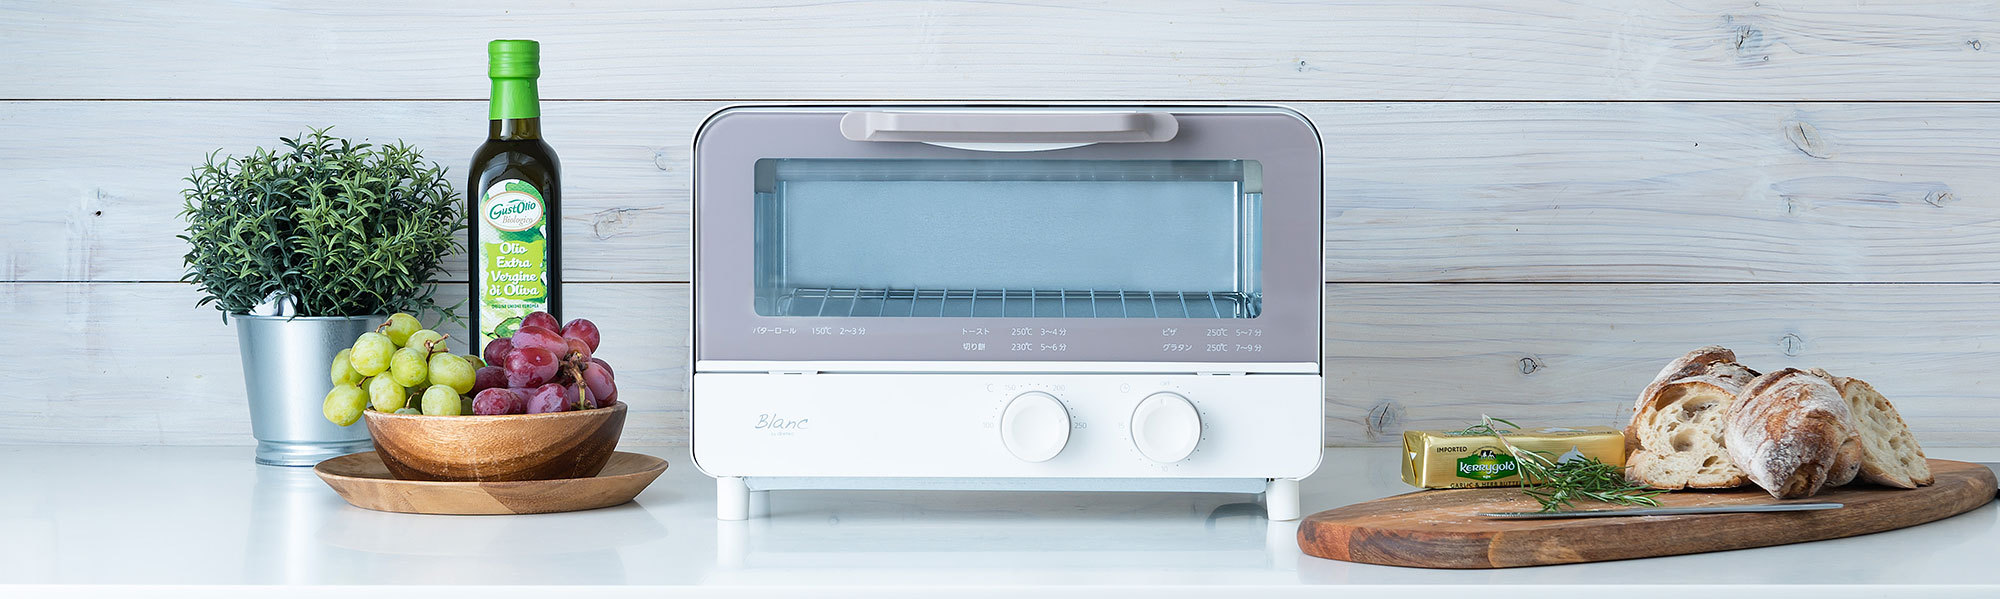 温度調整機能が付いたシンプルなドリテックのトースター